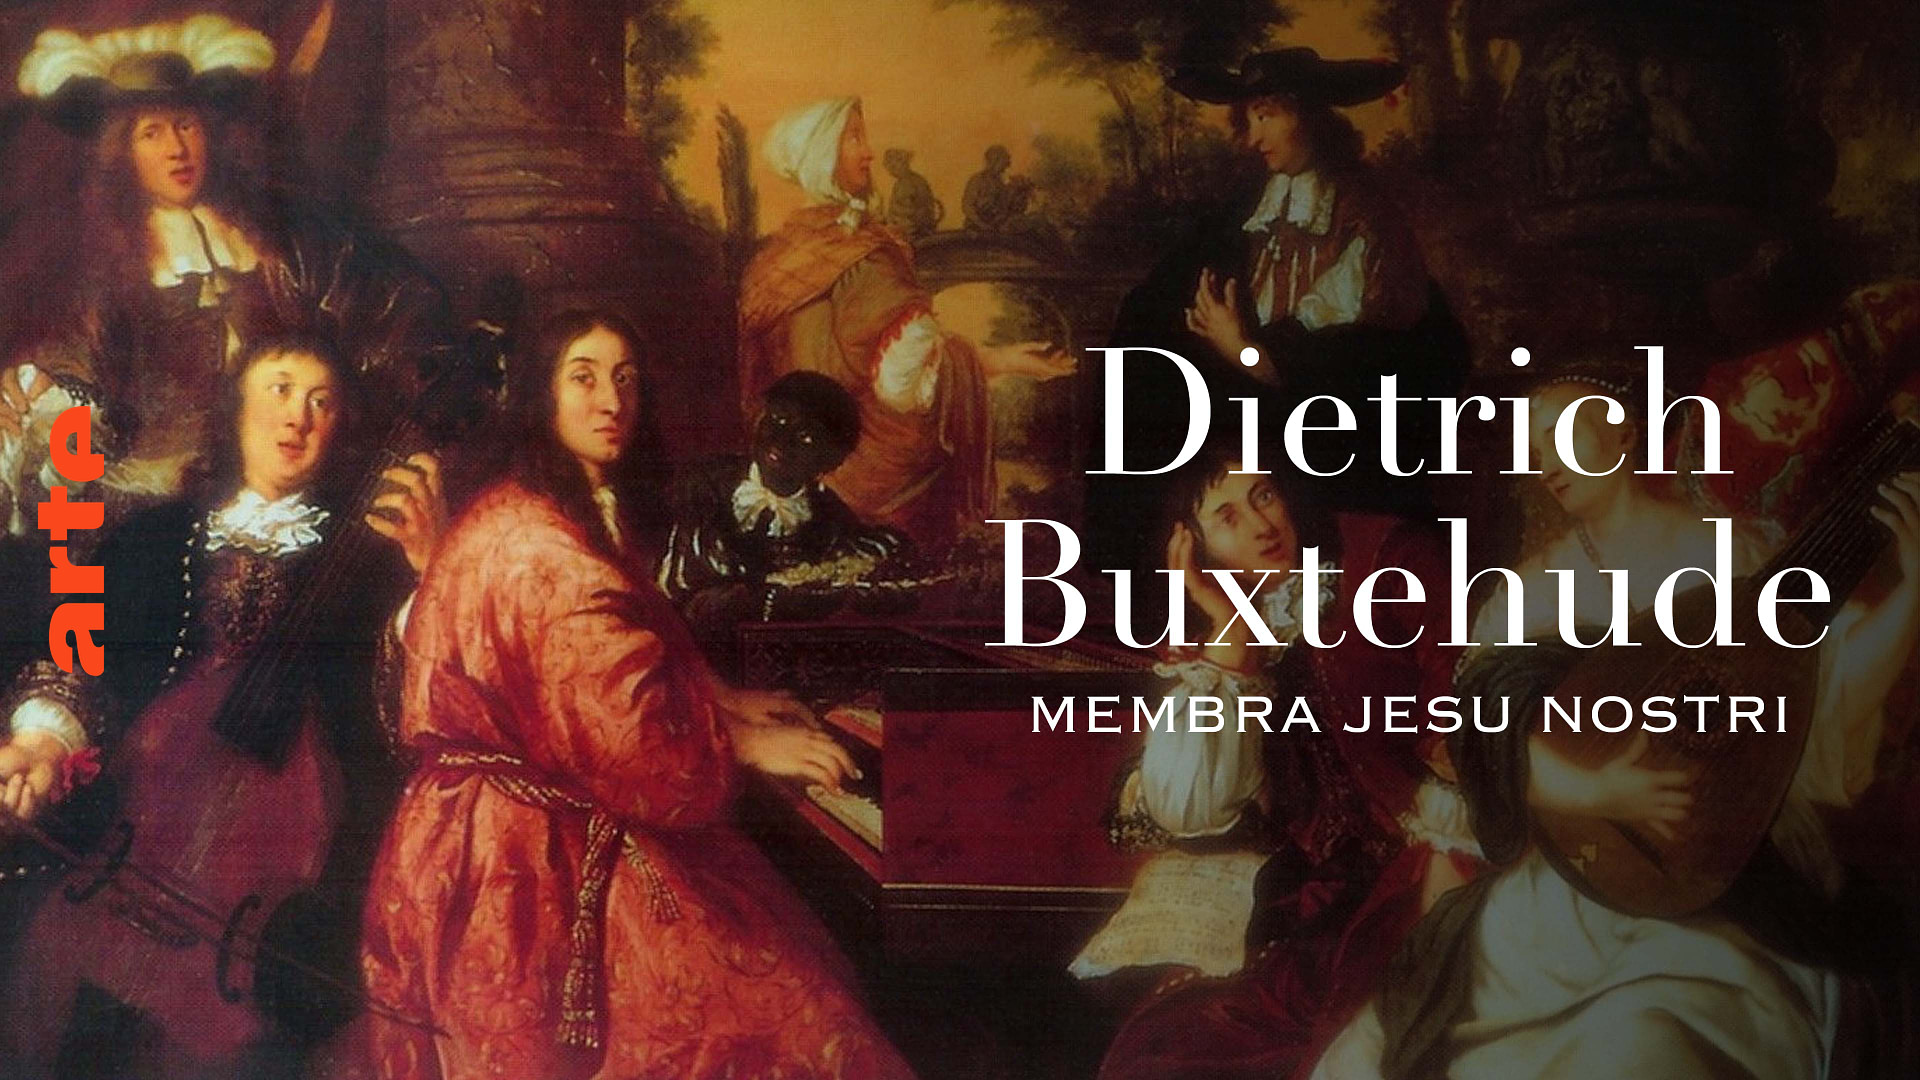 Dietrich Buxtehude: Membra Jesu nostri